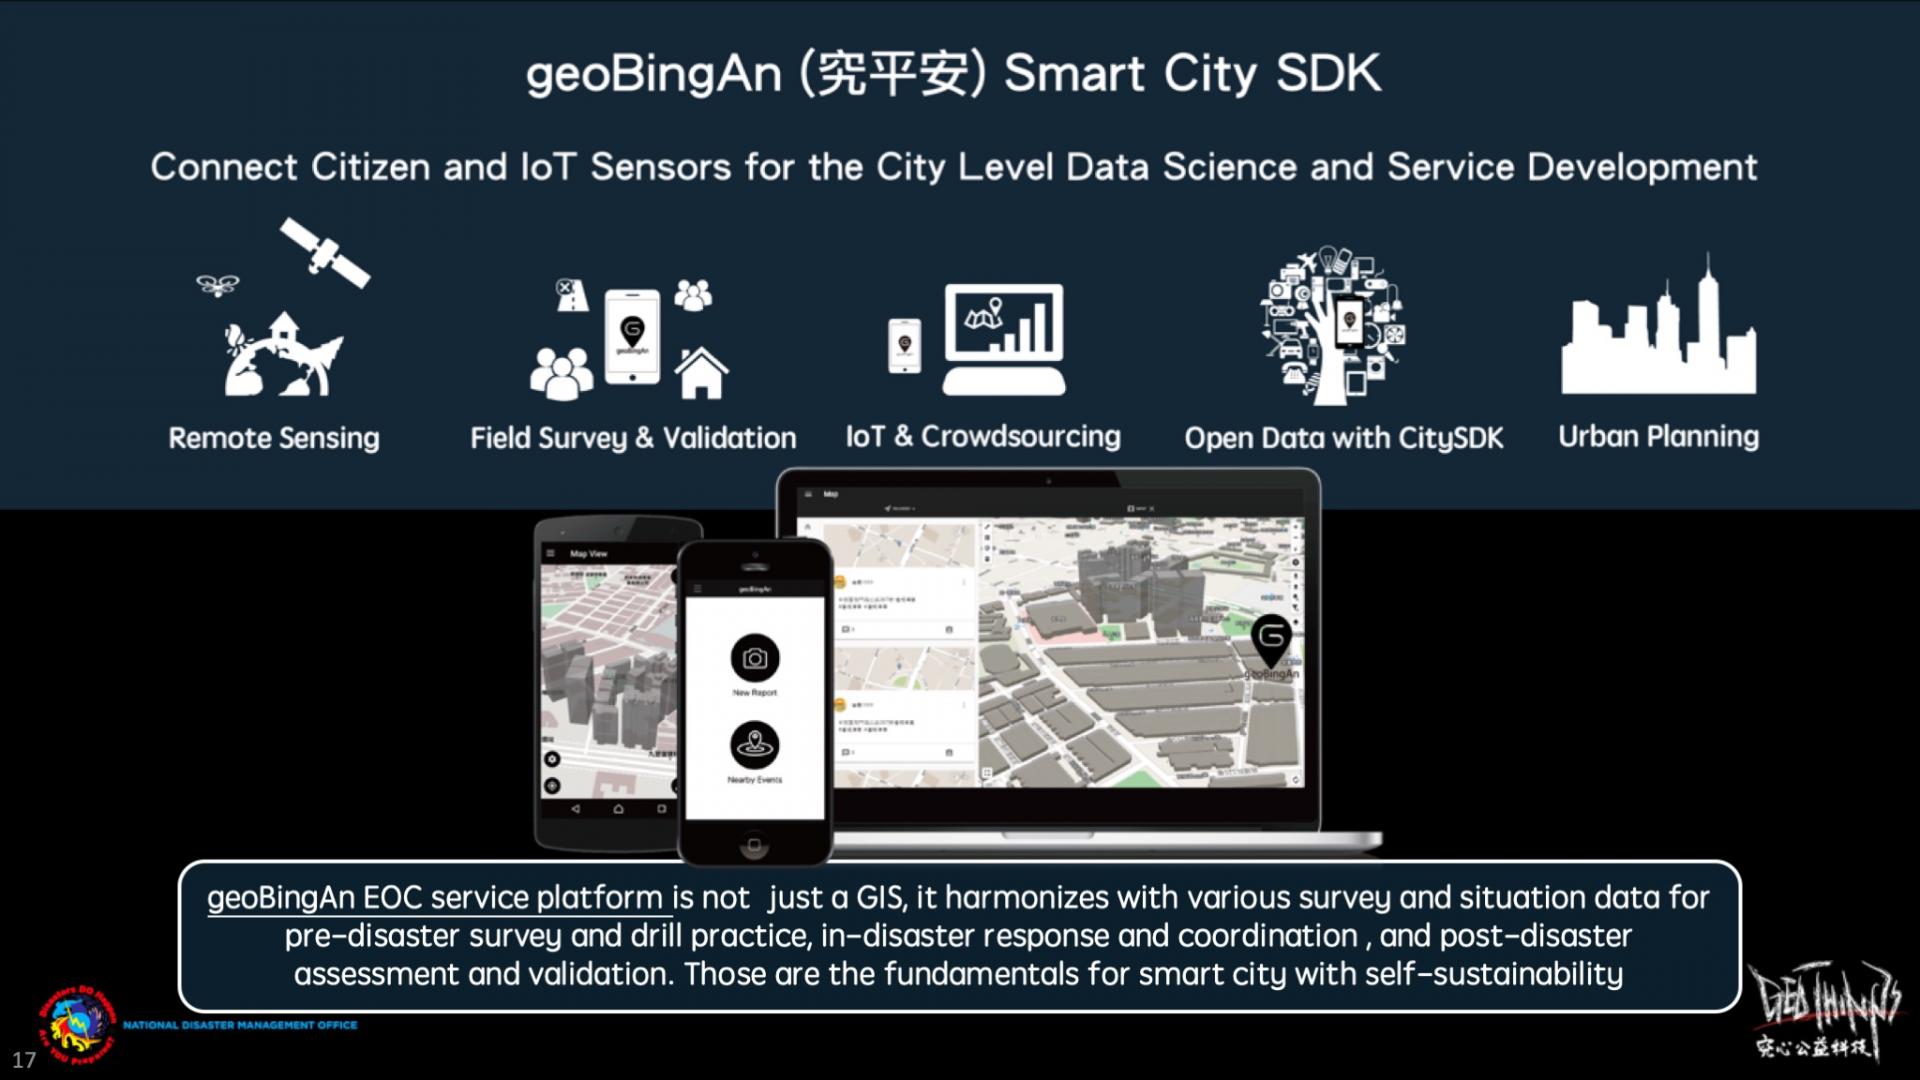 Förutom att bara vara nödinsatscentralen kan geoBingAn också utgöra hela utvecklingsplattformen för smarta städer för stadsplanering!